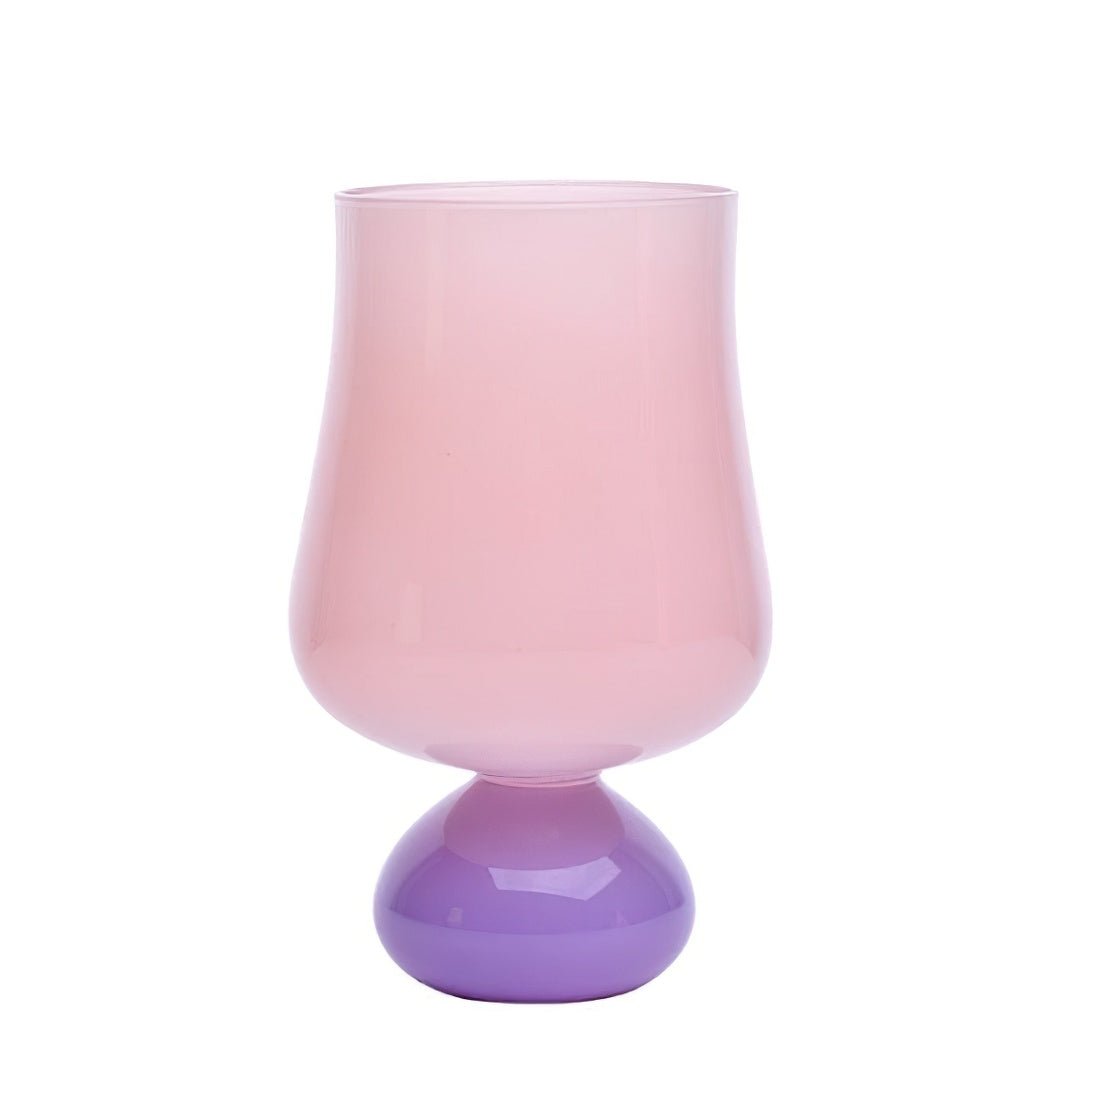 Pink & purple tulip flower shape drinking glass